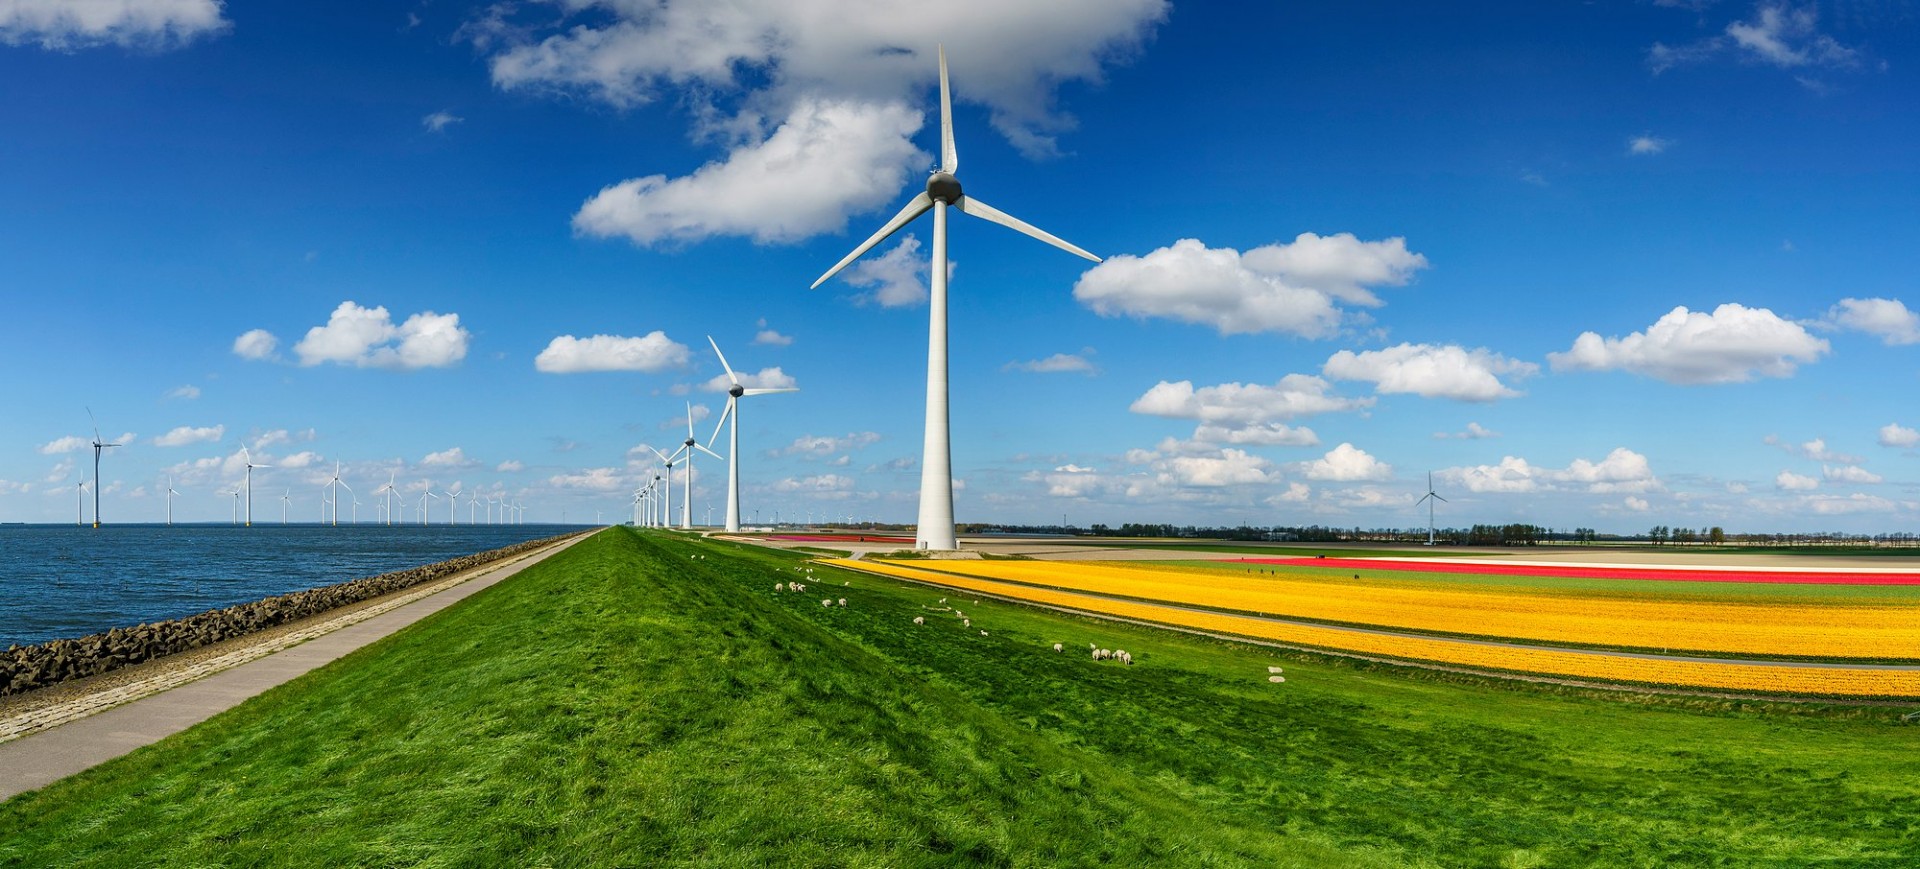 Energiebedrijf Essent verduurzaamt het stroomaanbod door de komende 15 jaar groene stroom uit Groningse windparken te kopen.